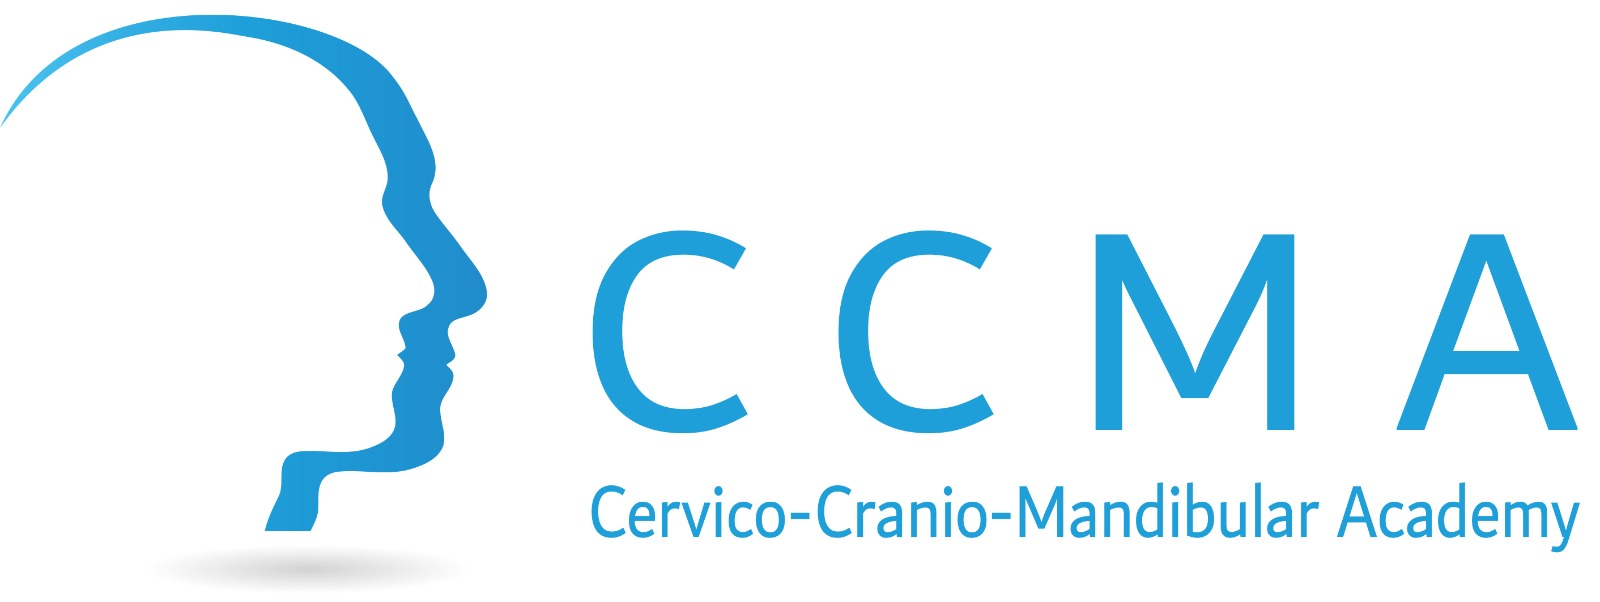 Cervico-Cranio-Mandibular Academy